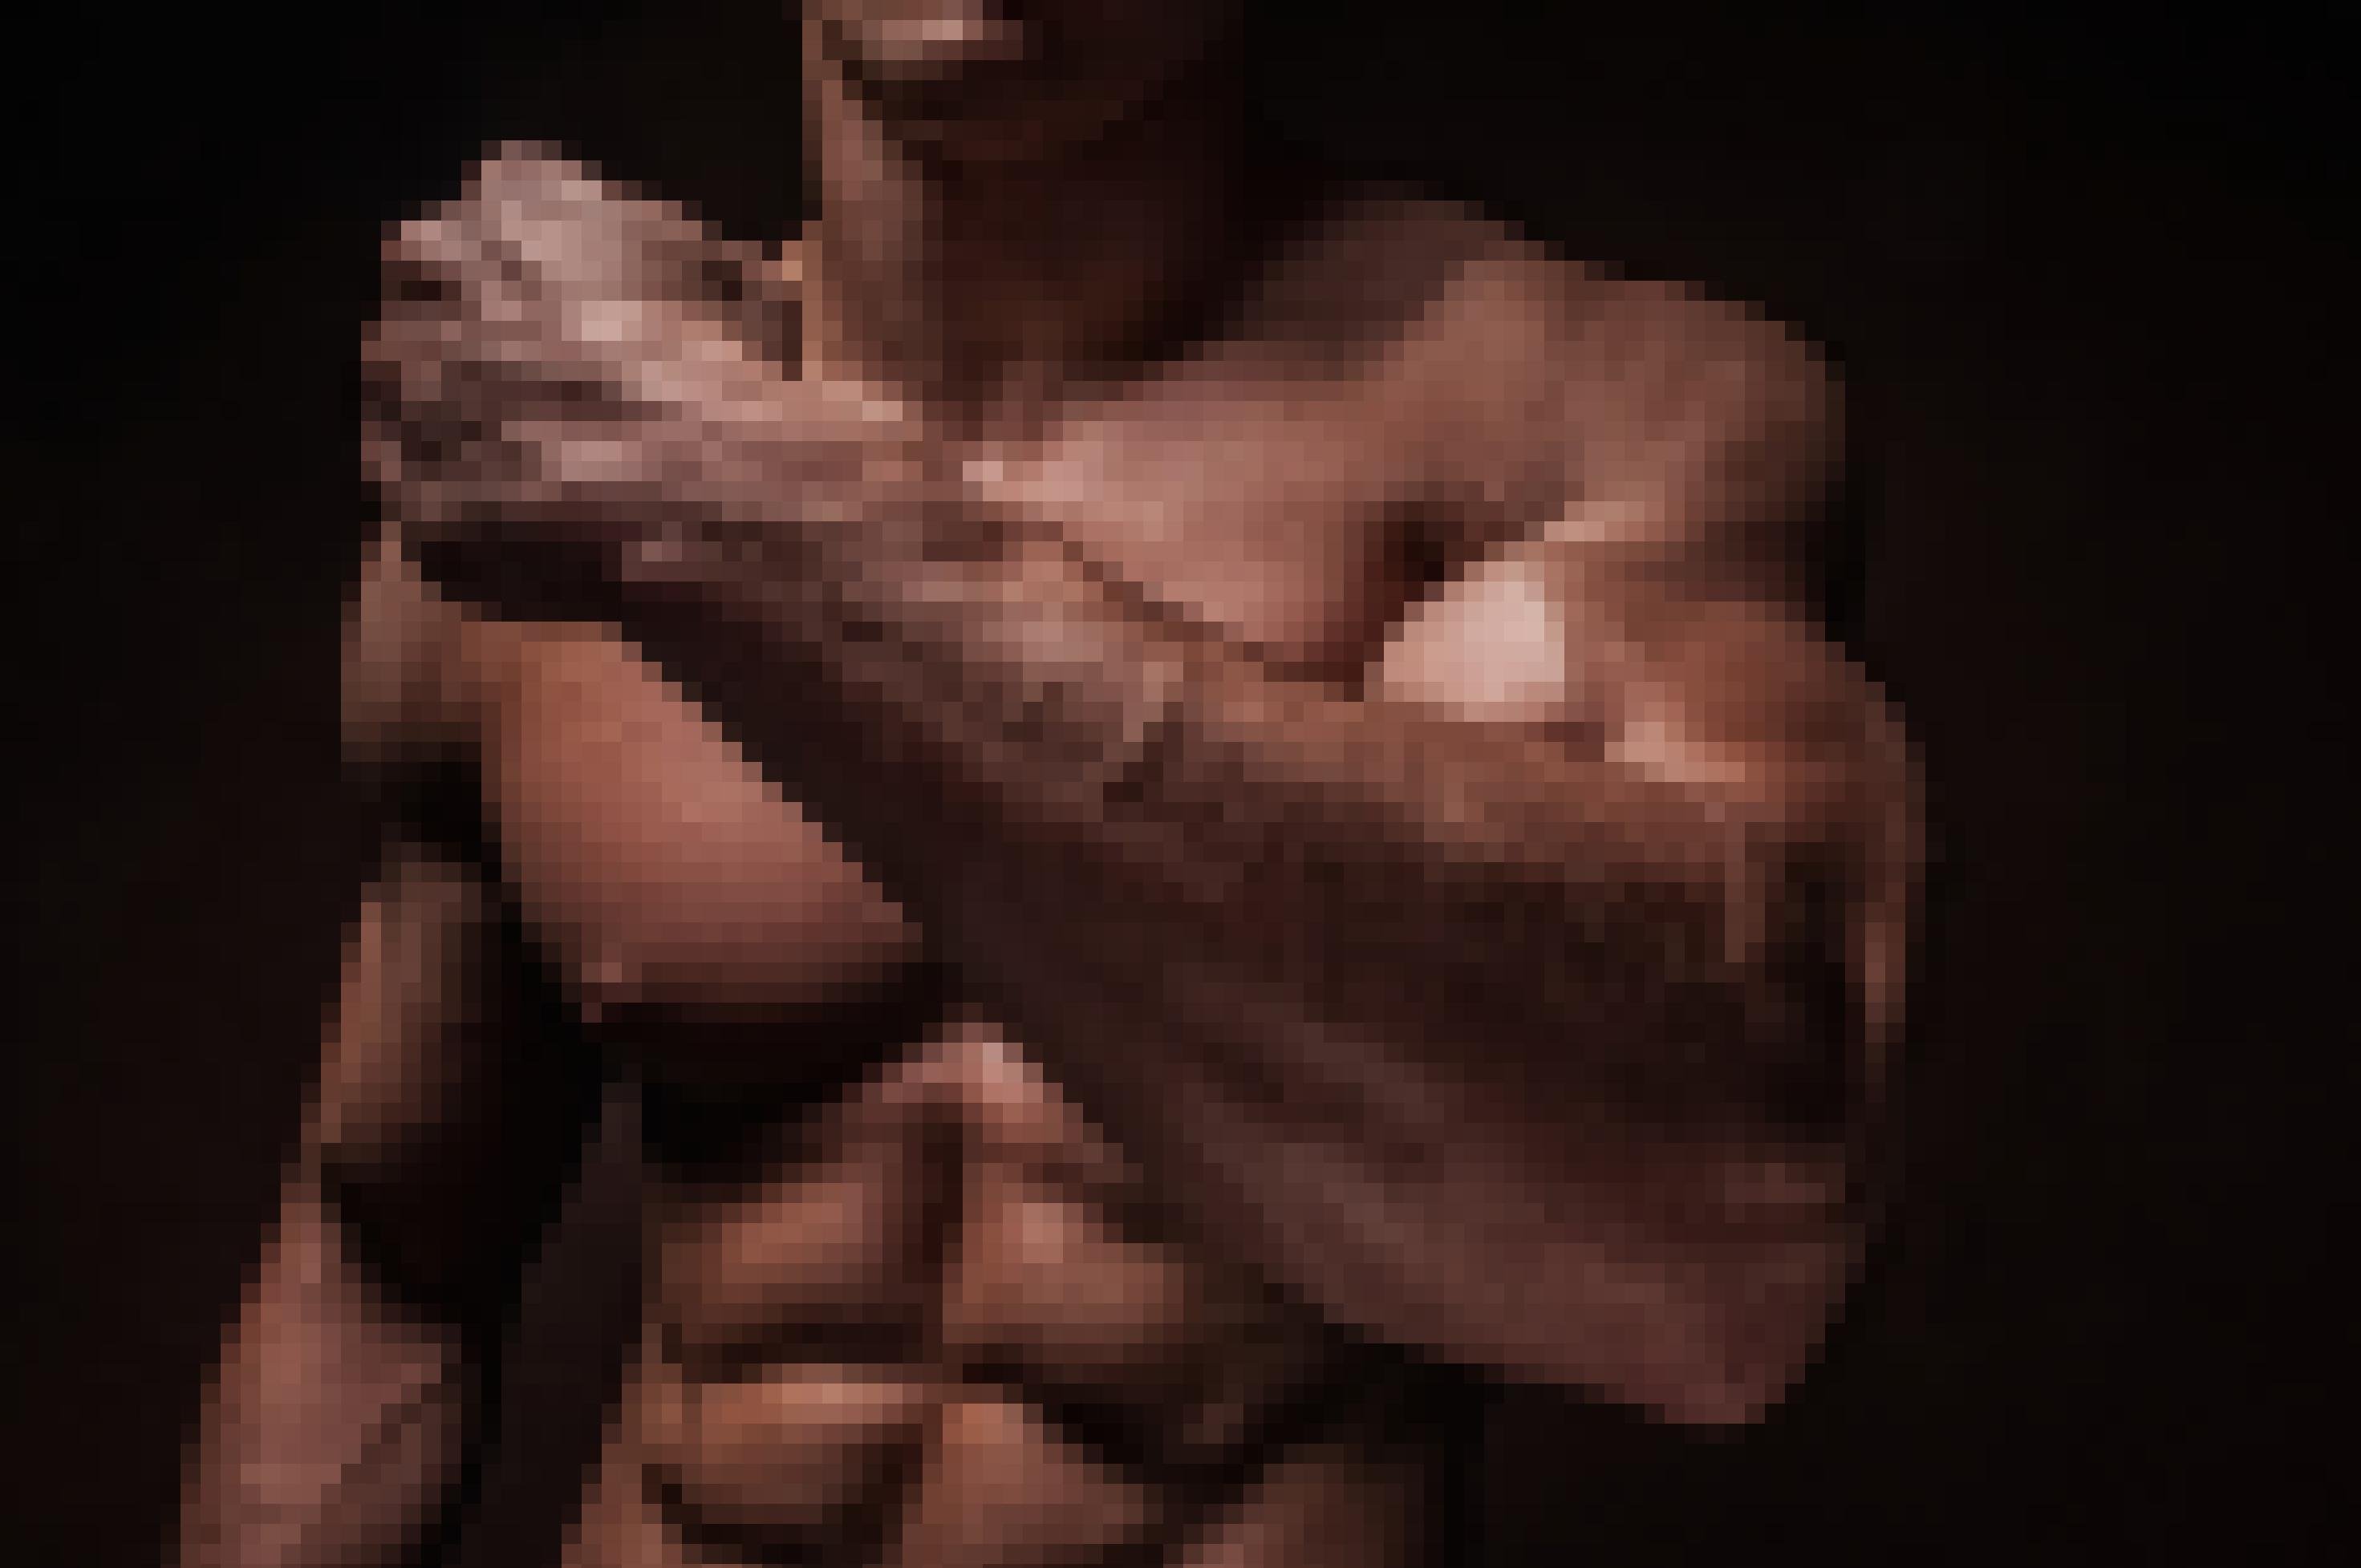 Zu sehen ist vor dunklem Hintergrund der angeleuchtete, braune, nackte Oberkörper eines Mannes mit Waschbrettbauch und ausgeprägter Brustmuskulatur. Er hält seinen linken Arm angewinkelt vor sich und zeigt dabei seinen riesigen Bizeps.